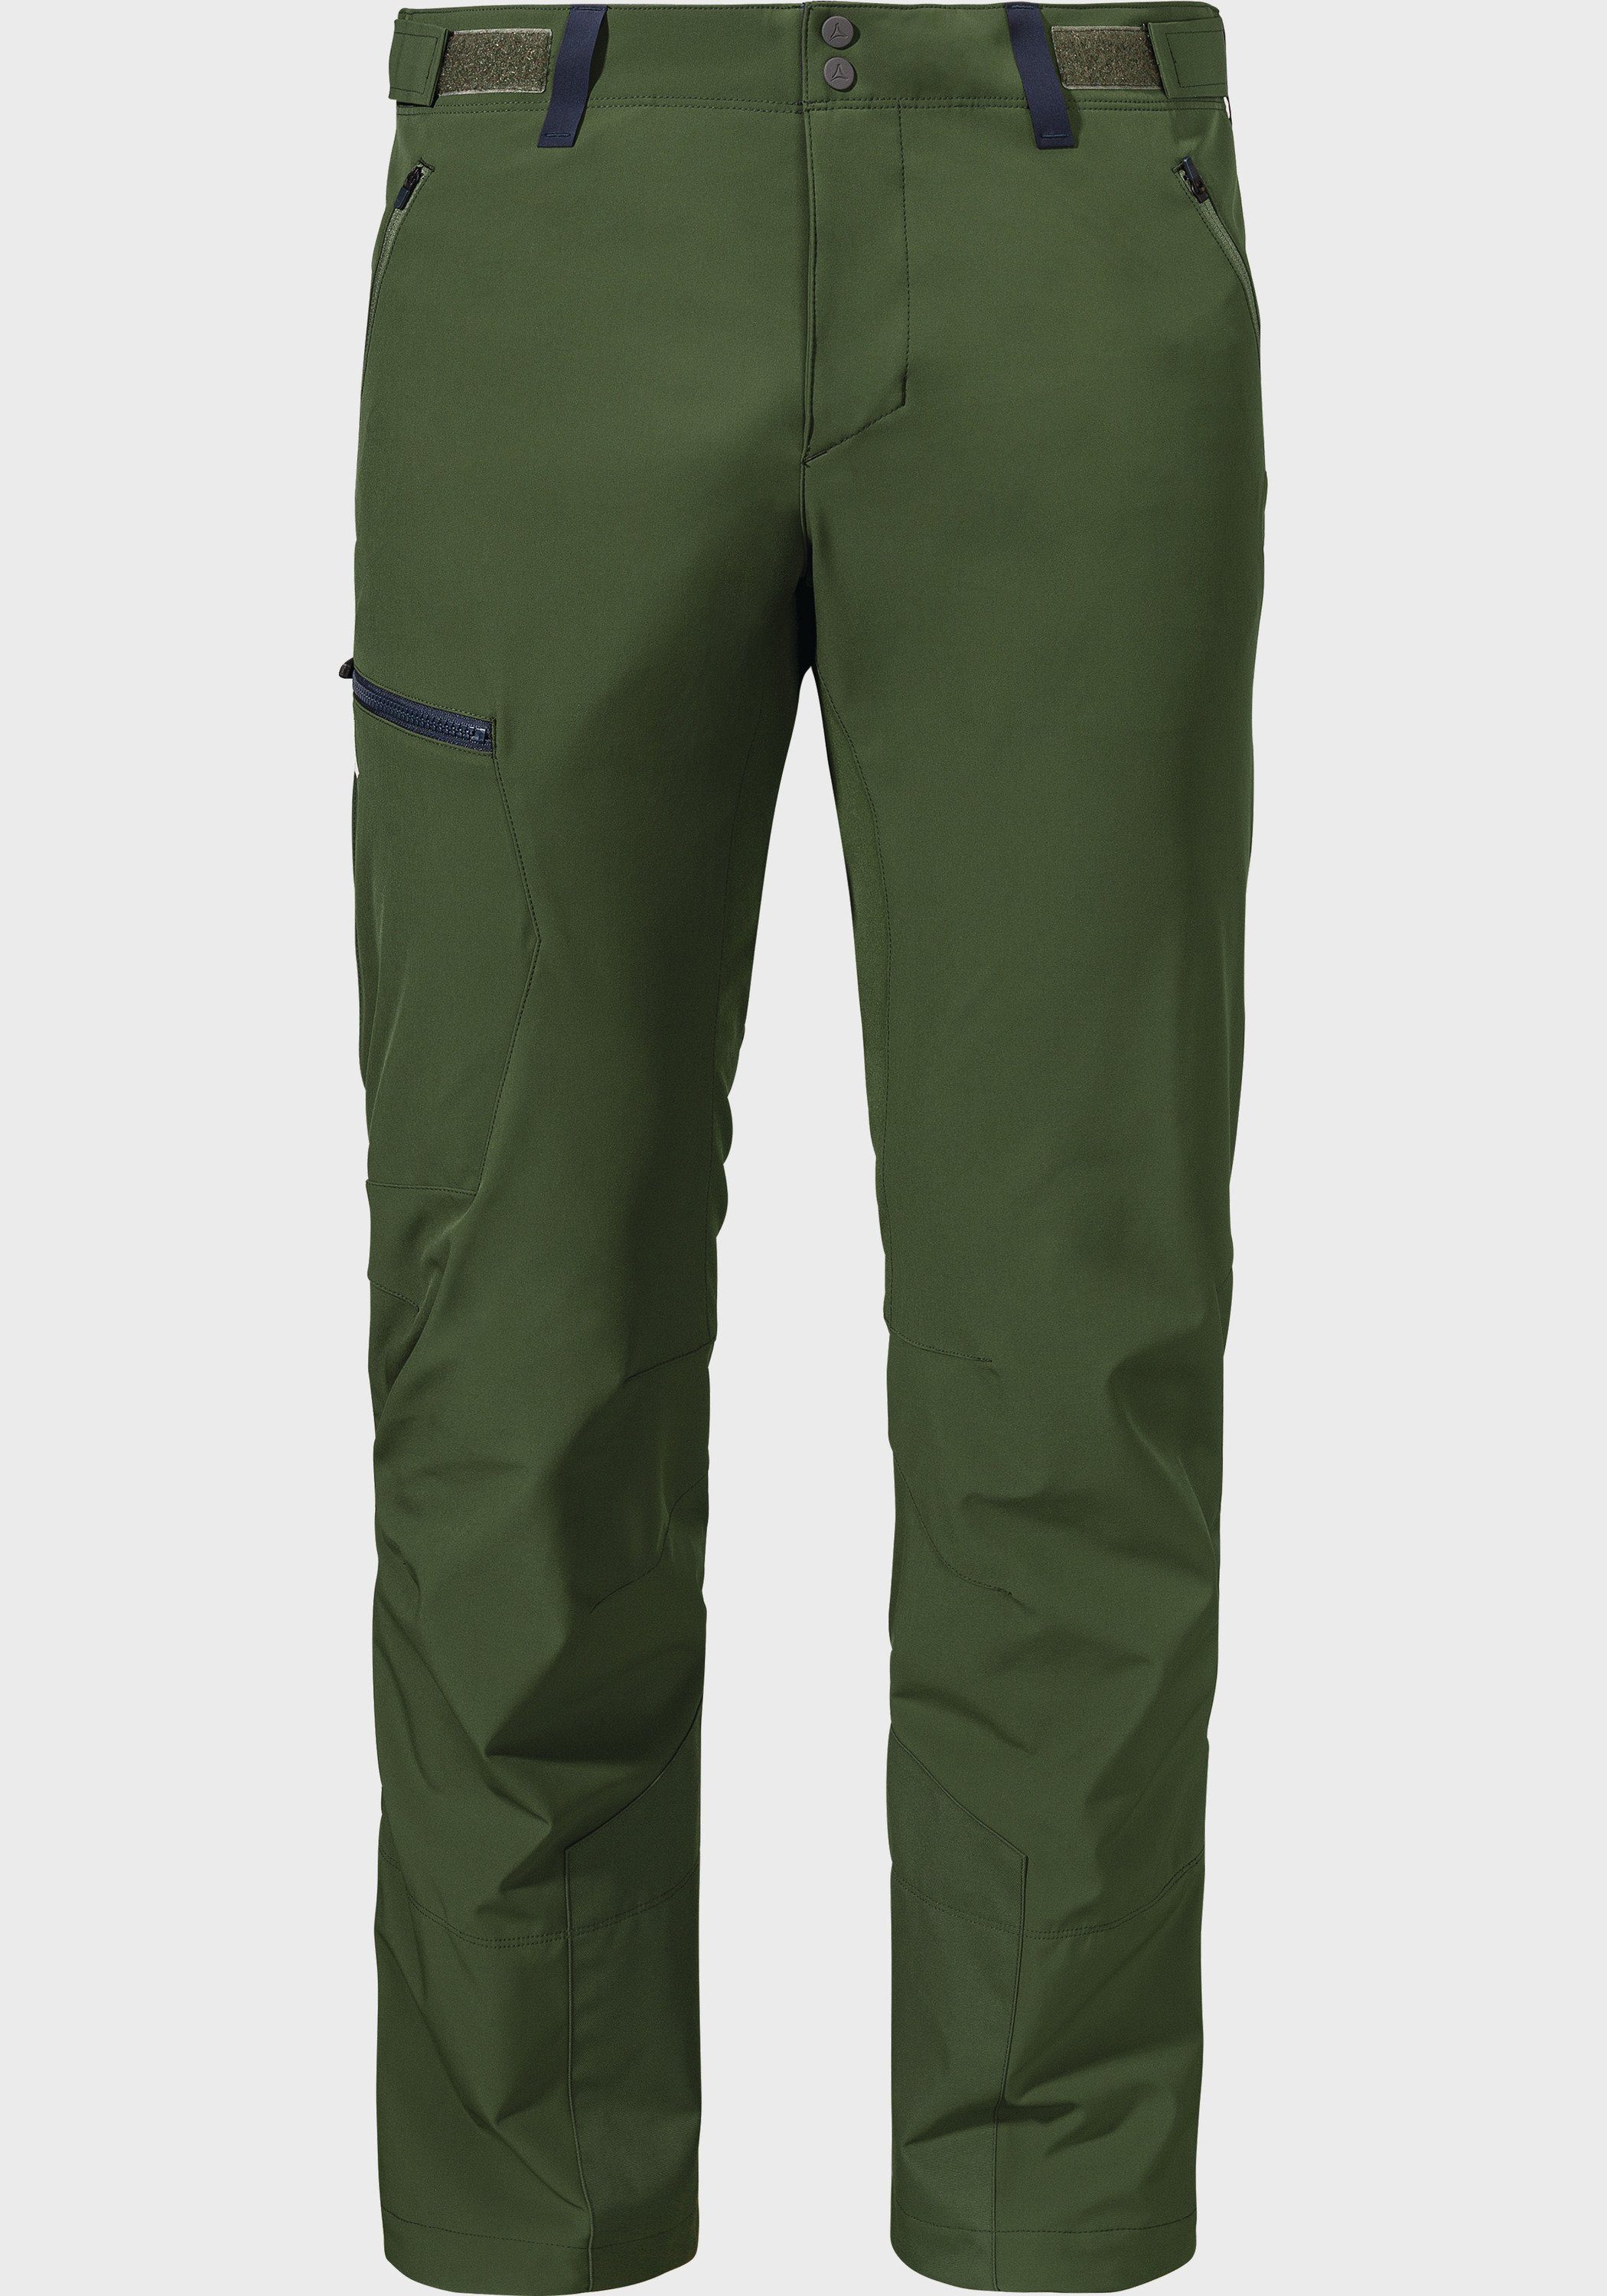 Schöffel Outdoorhose M grün Softshell Matrei Pants